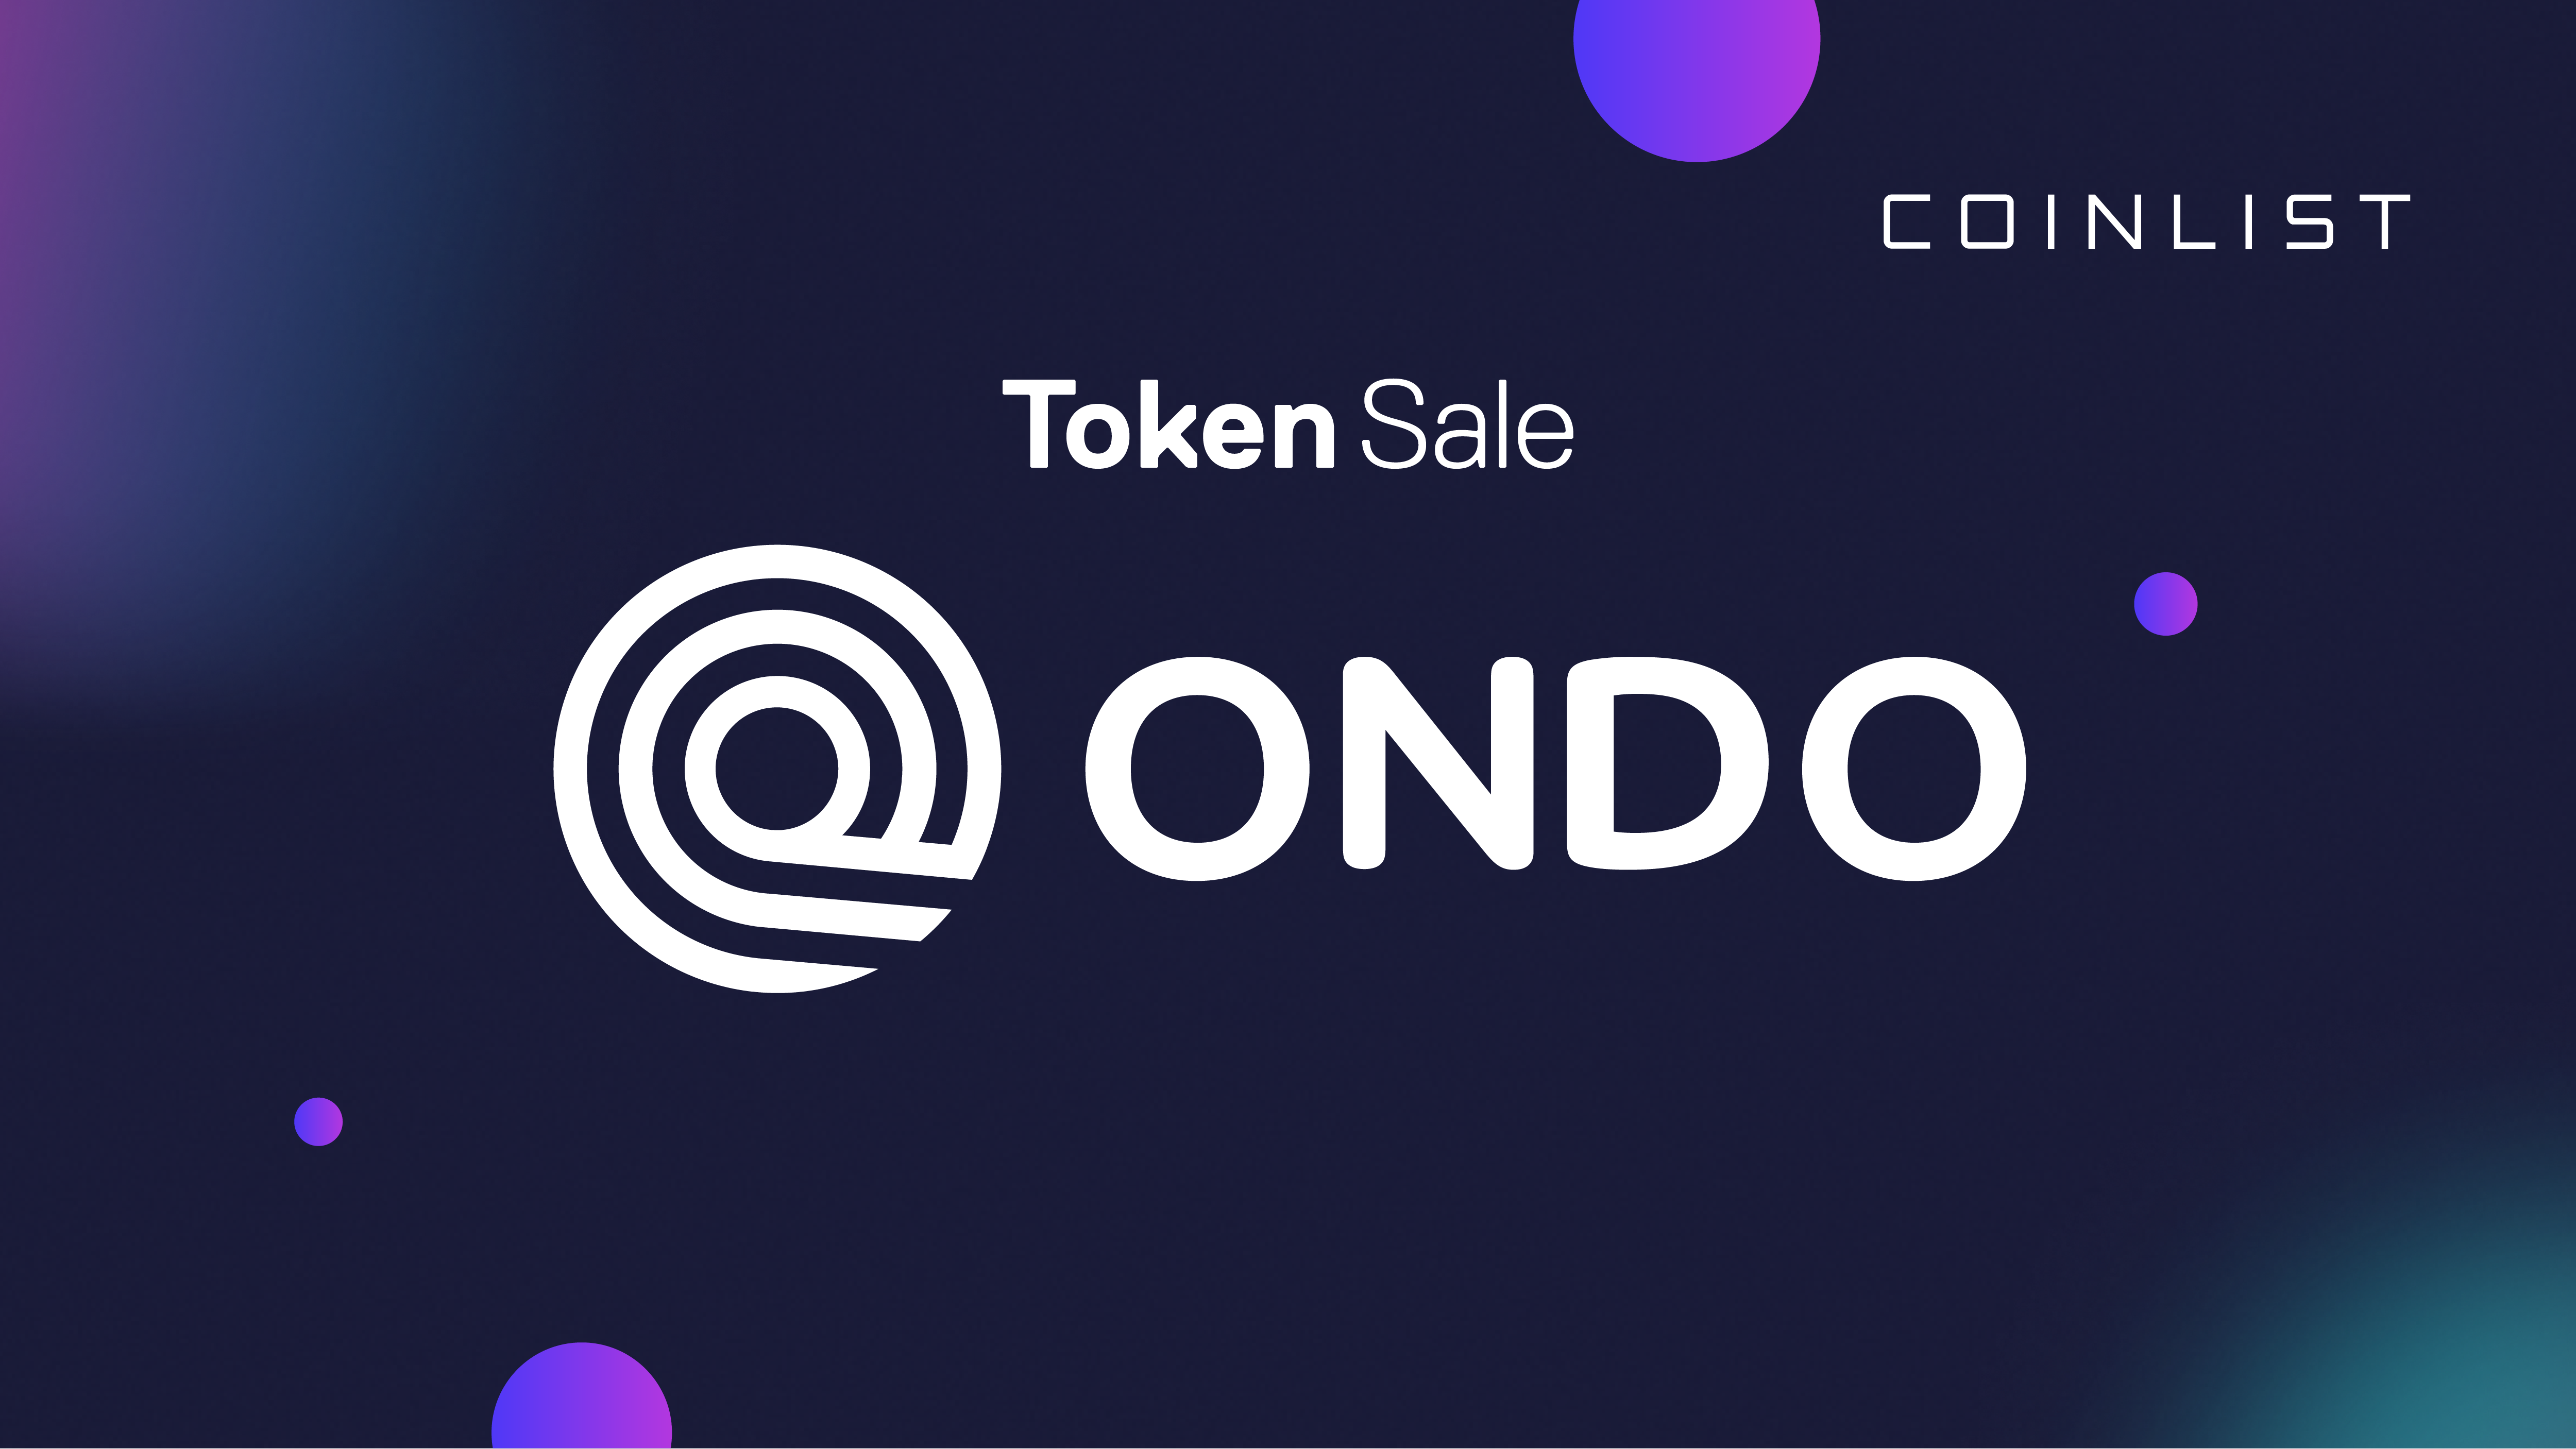 Announcing the Ondo Token Sale on CoinList